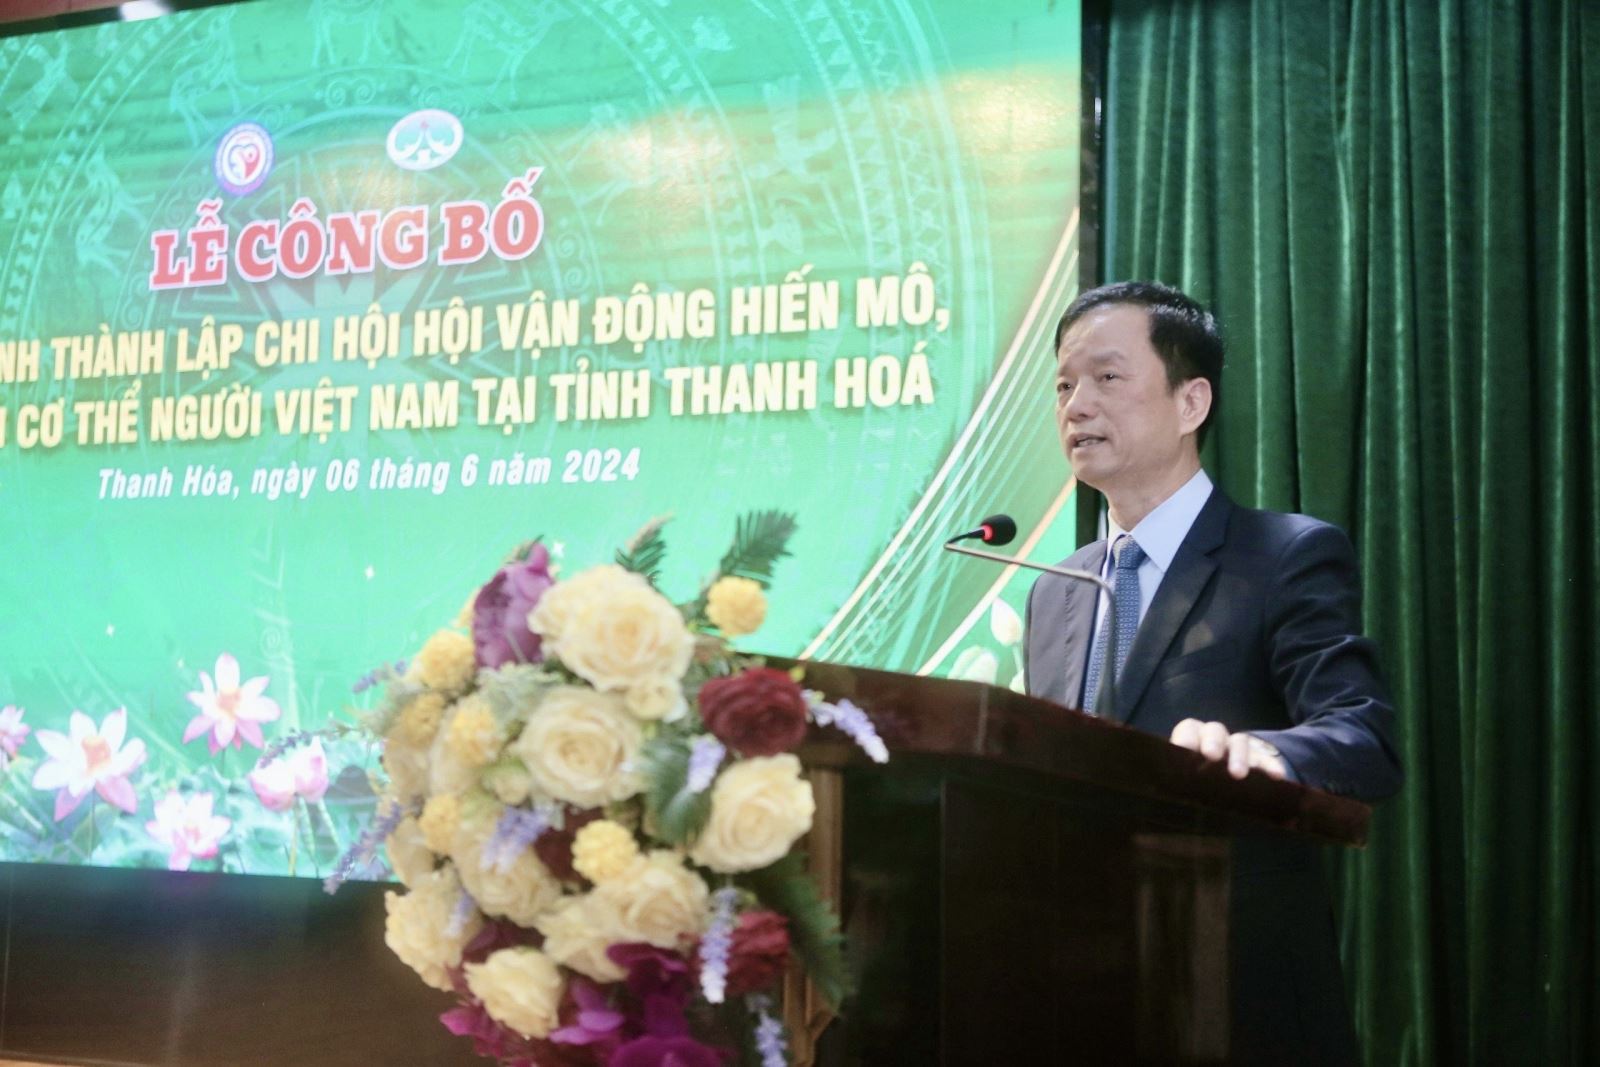 Ông Nguyễn Văn Sỹ, Giám đốc bệnh viện đa khoa tỉnh Thanh Hóa phát biểu tại buổi lễ.